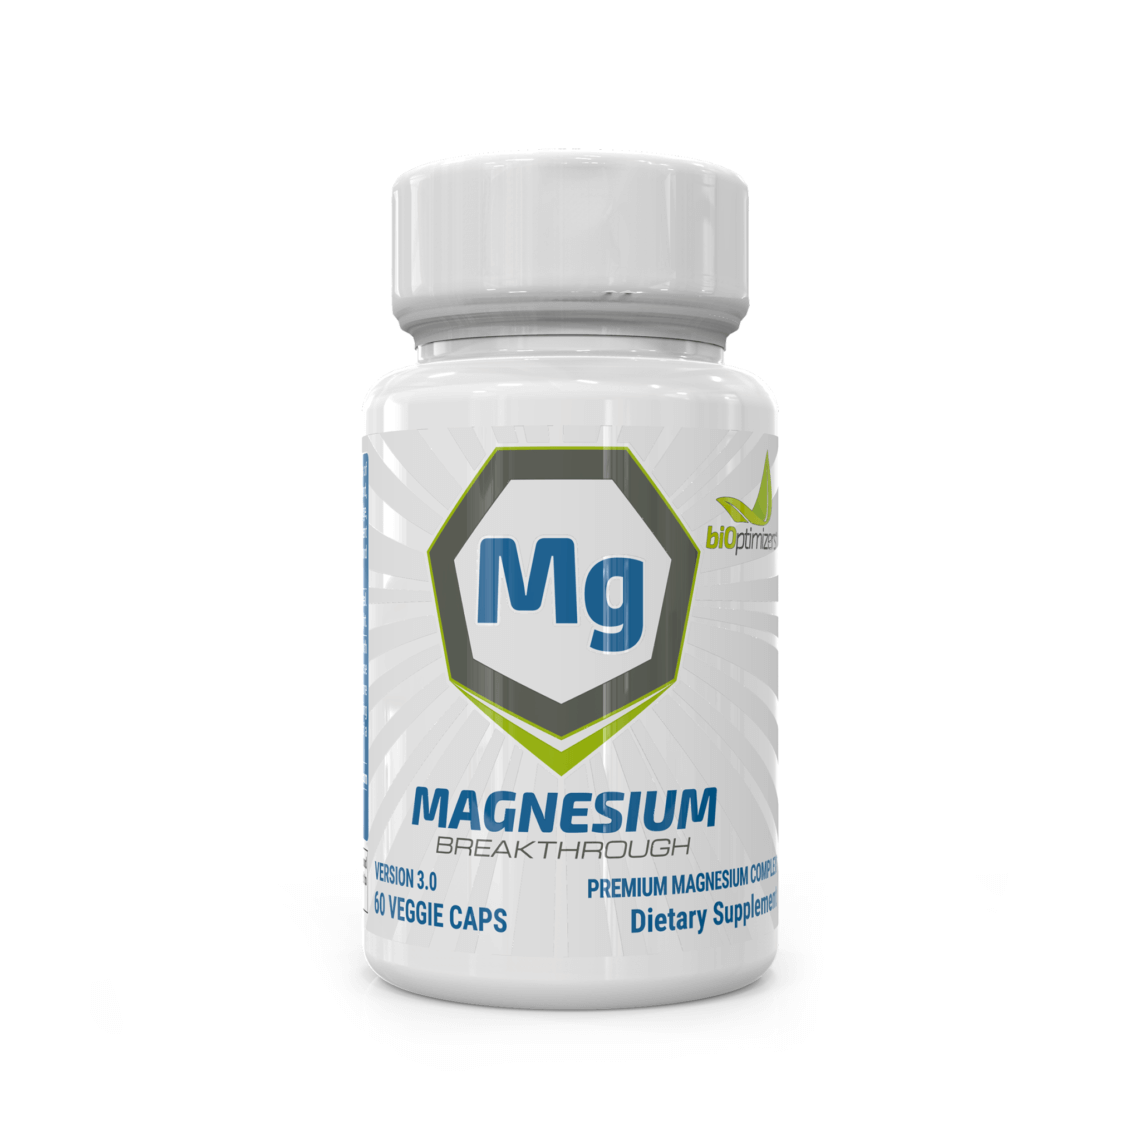 Magnesium Breakthrough Review - Best Magnesium Supplement Brand